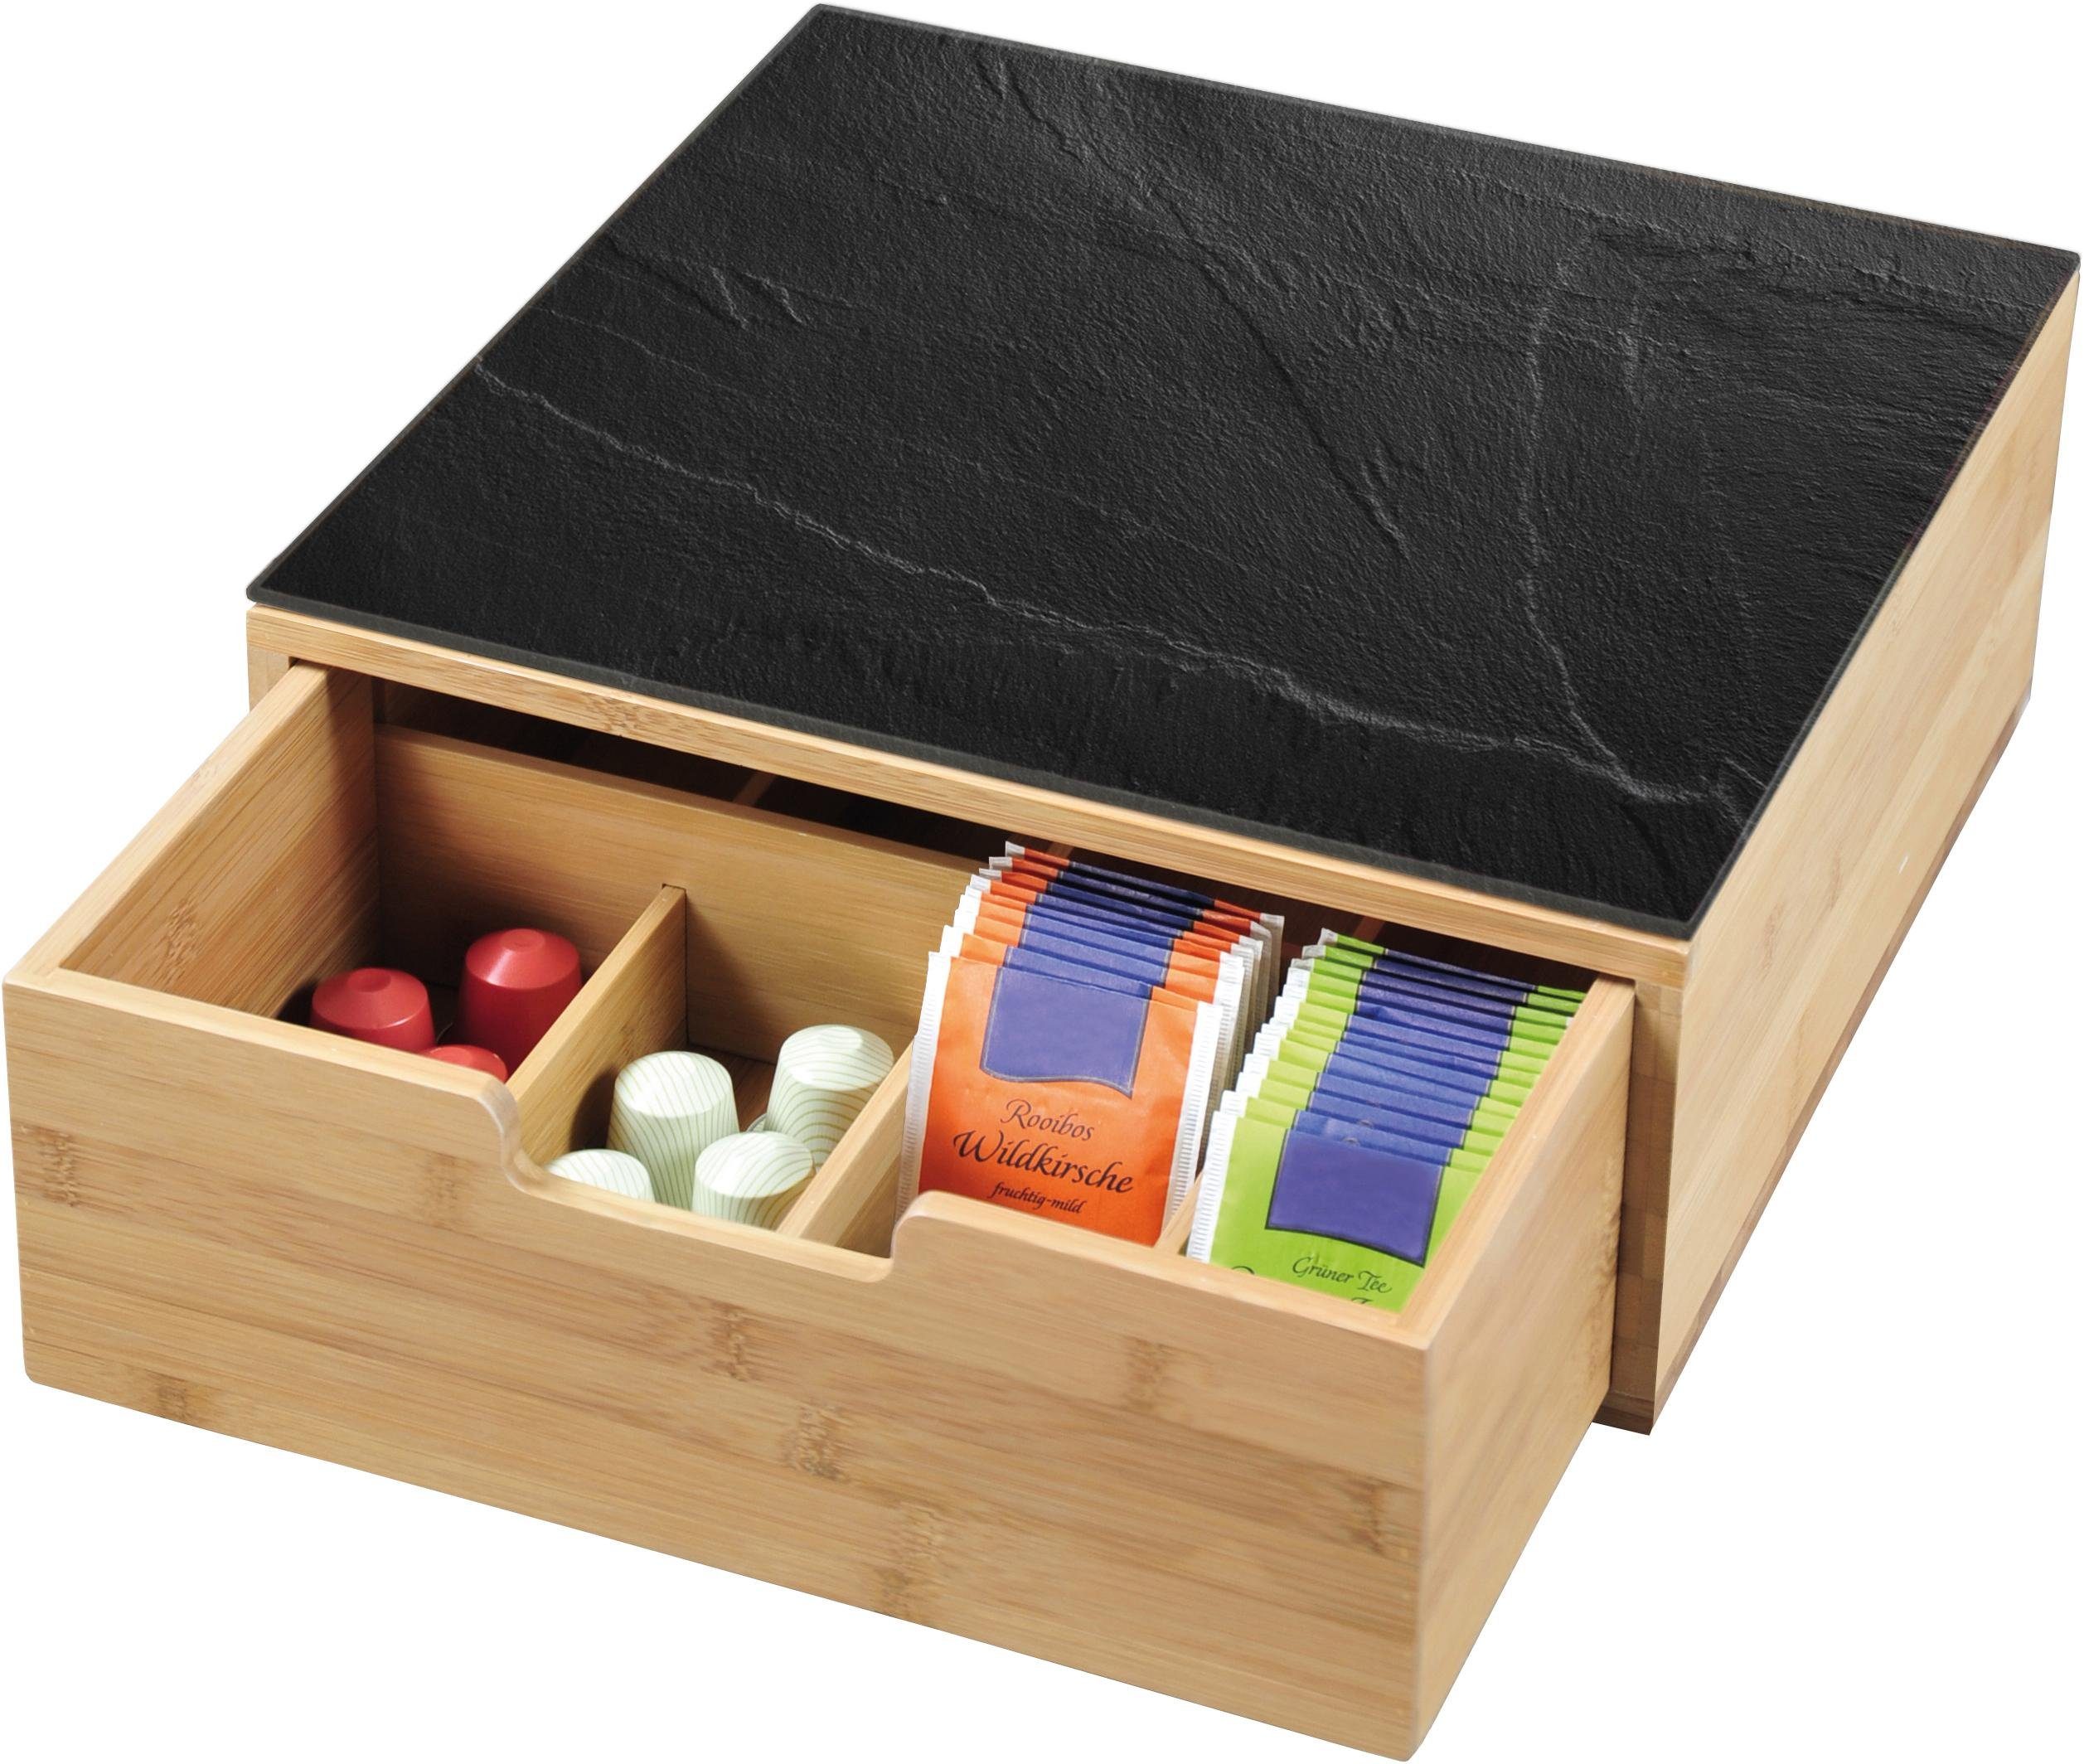 KESPER for kitchen & home Teebox Kapselspender-Box mit Schublade, Bambus,  Glasplatte aus gehärtetem Sicherheitsglas